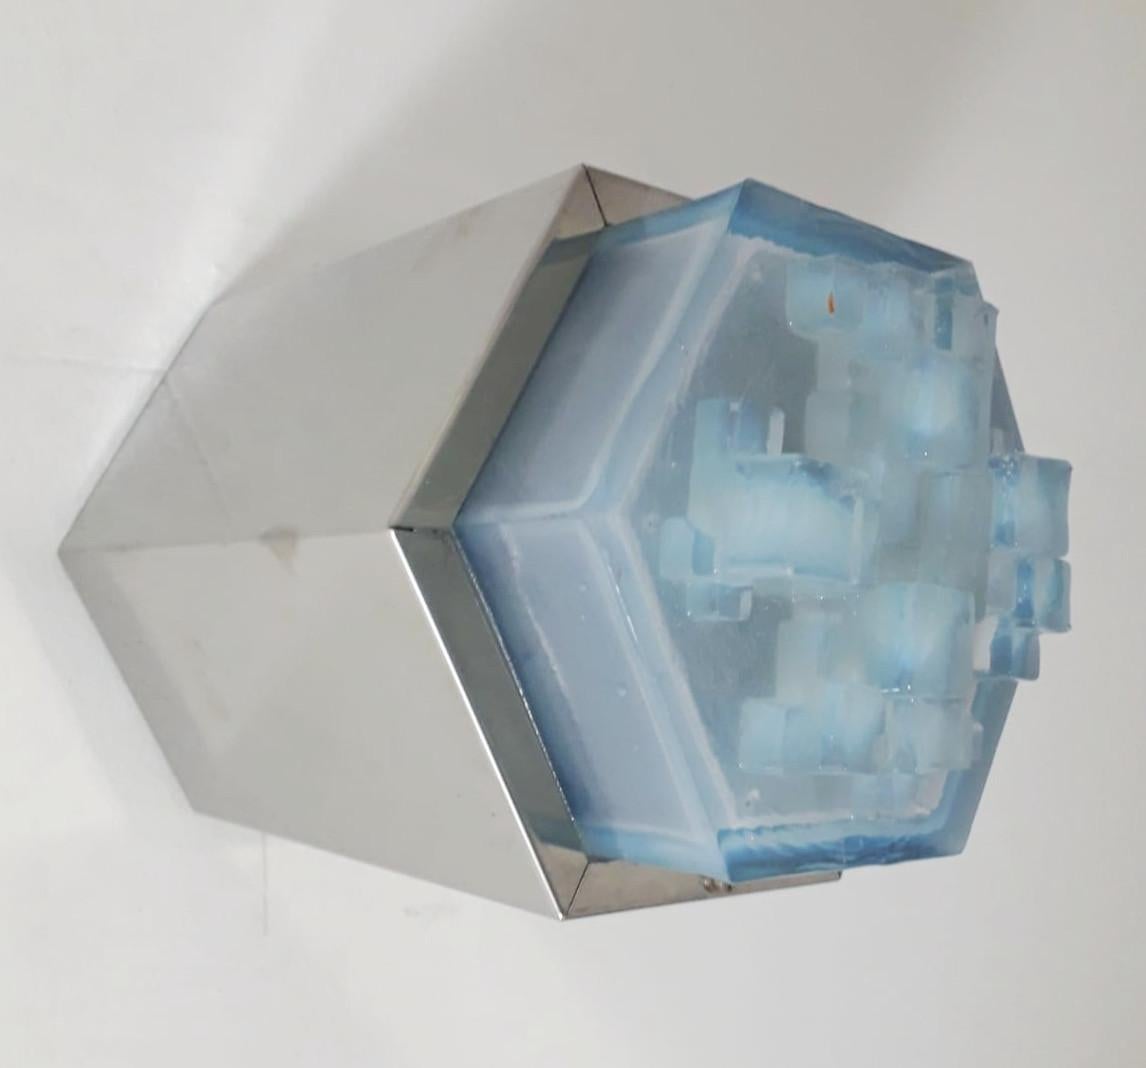 Applique murale ou montage encastré original du milieu du siècle dernier avec cadre hexagonal en acier et diffuseur hexagonal en verre dépoli bleu clair par Poliarte / Fabriqué en Italie, vers les années 1960.
1 lumière / type E14 / max 40W
Taille :